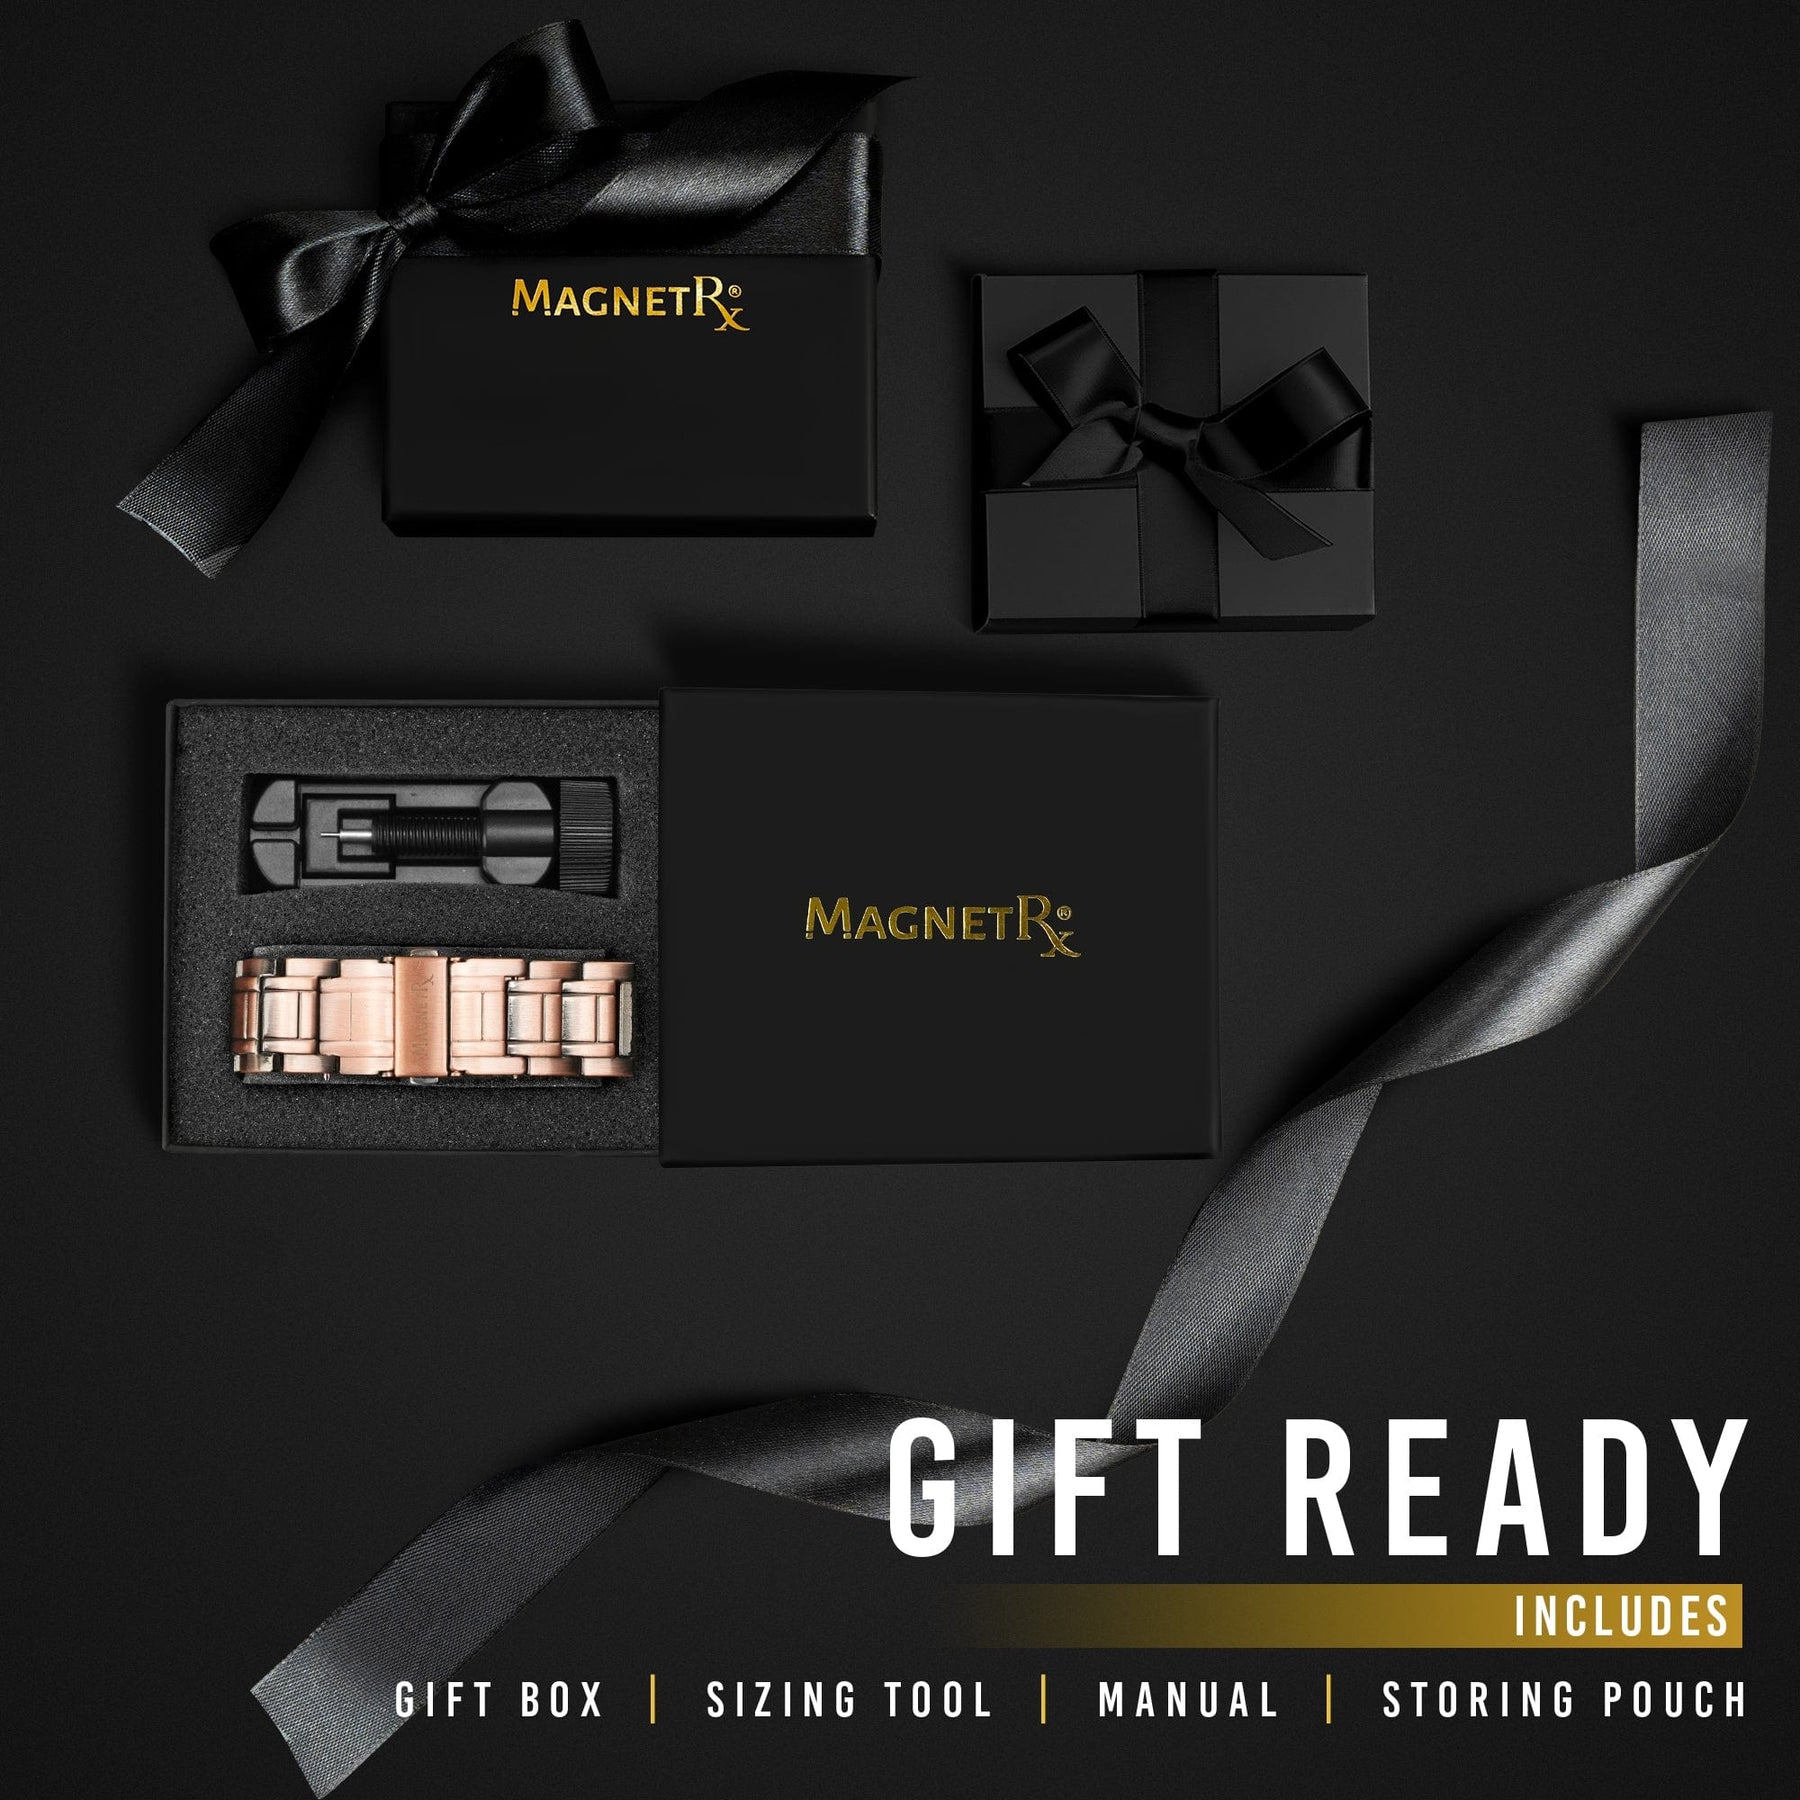 Magnetic Bracelet 3x Strength Copper Magnetic Bracelet for Men (Stealth) MagnetRX